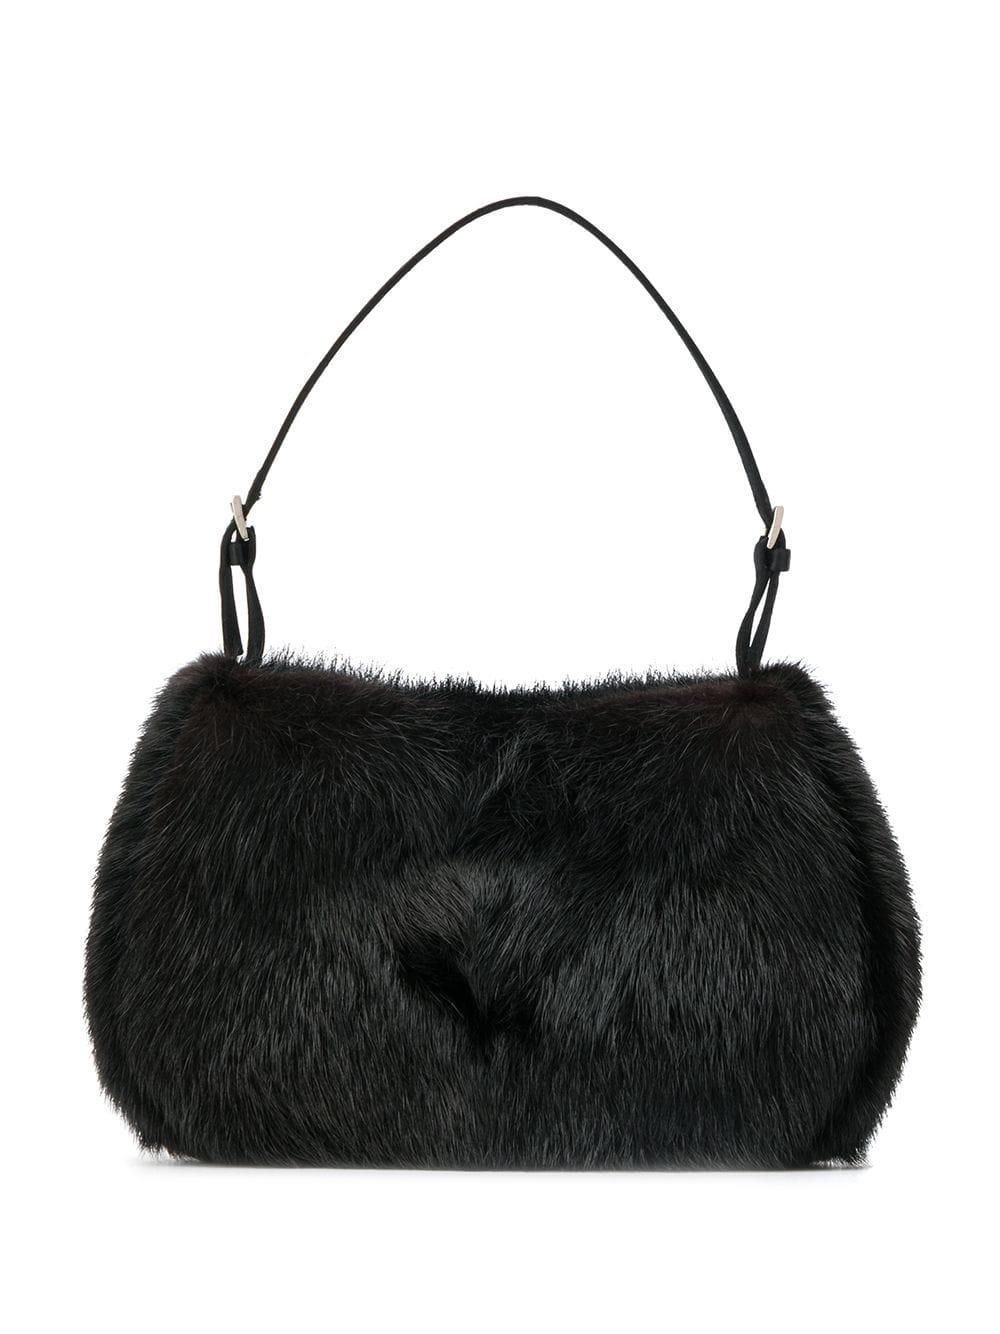 Prada Fur Classic Shoulder Bag in Black - Lyst